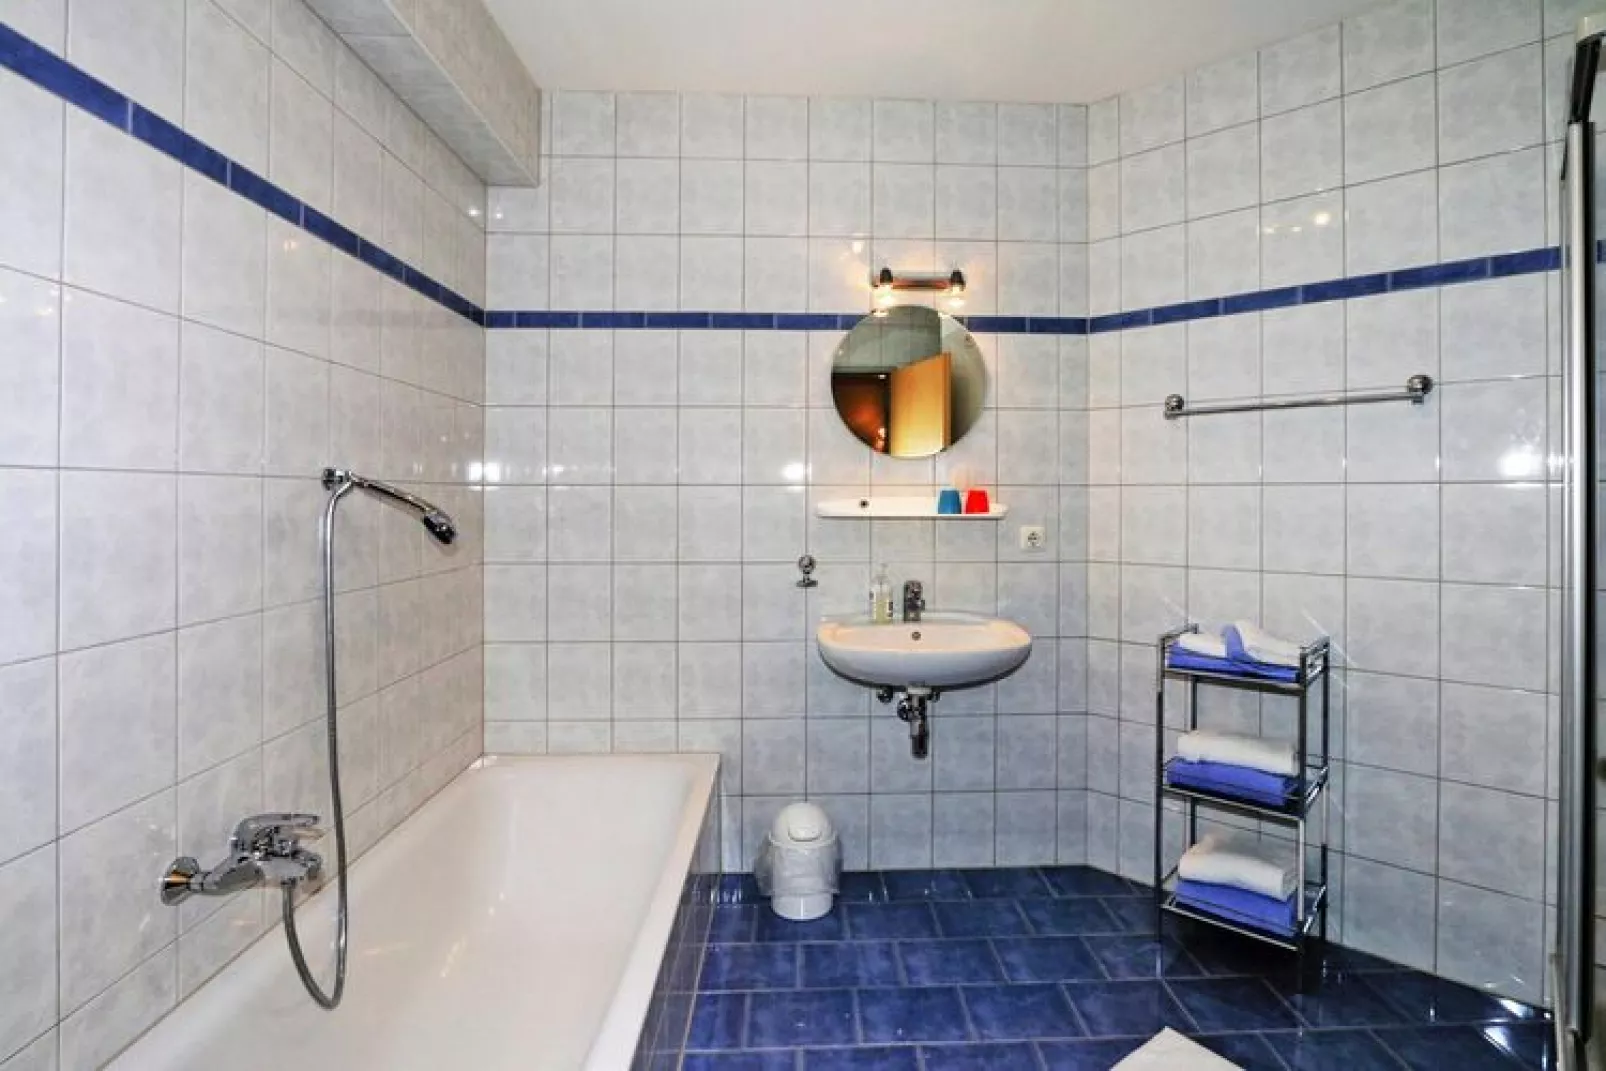 Wirtlerhaus Bichlbach - 6 Personen-Badkamer